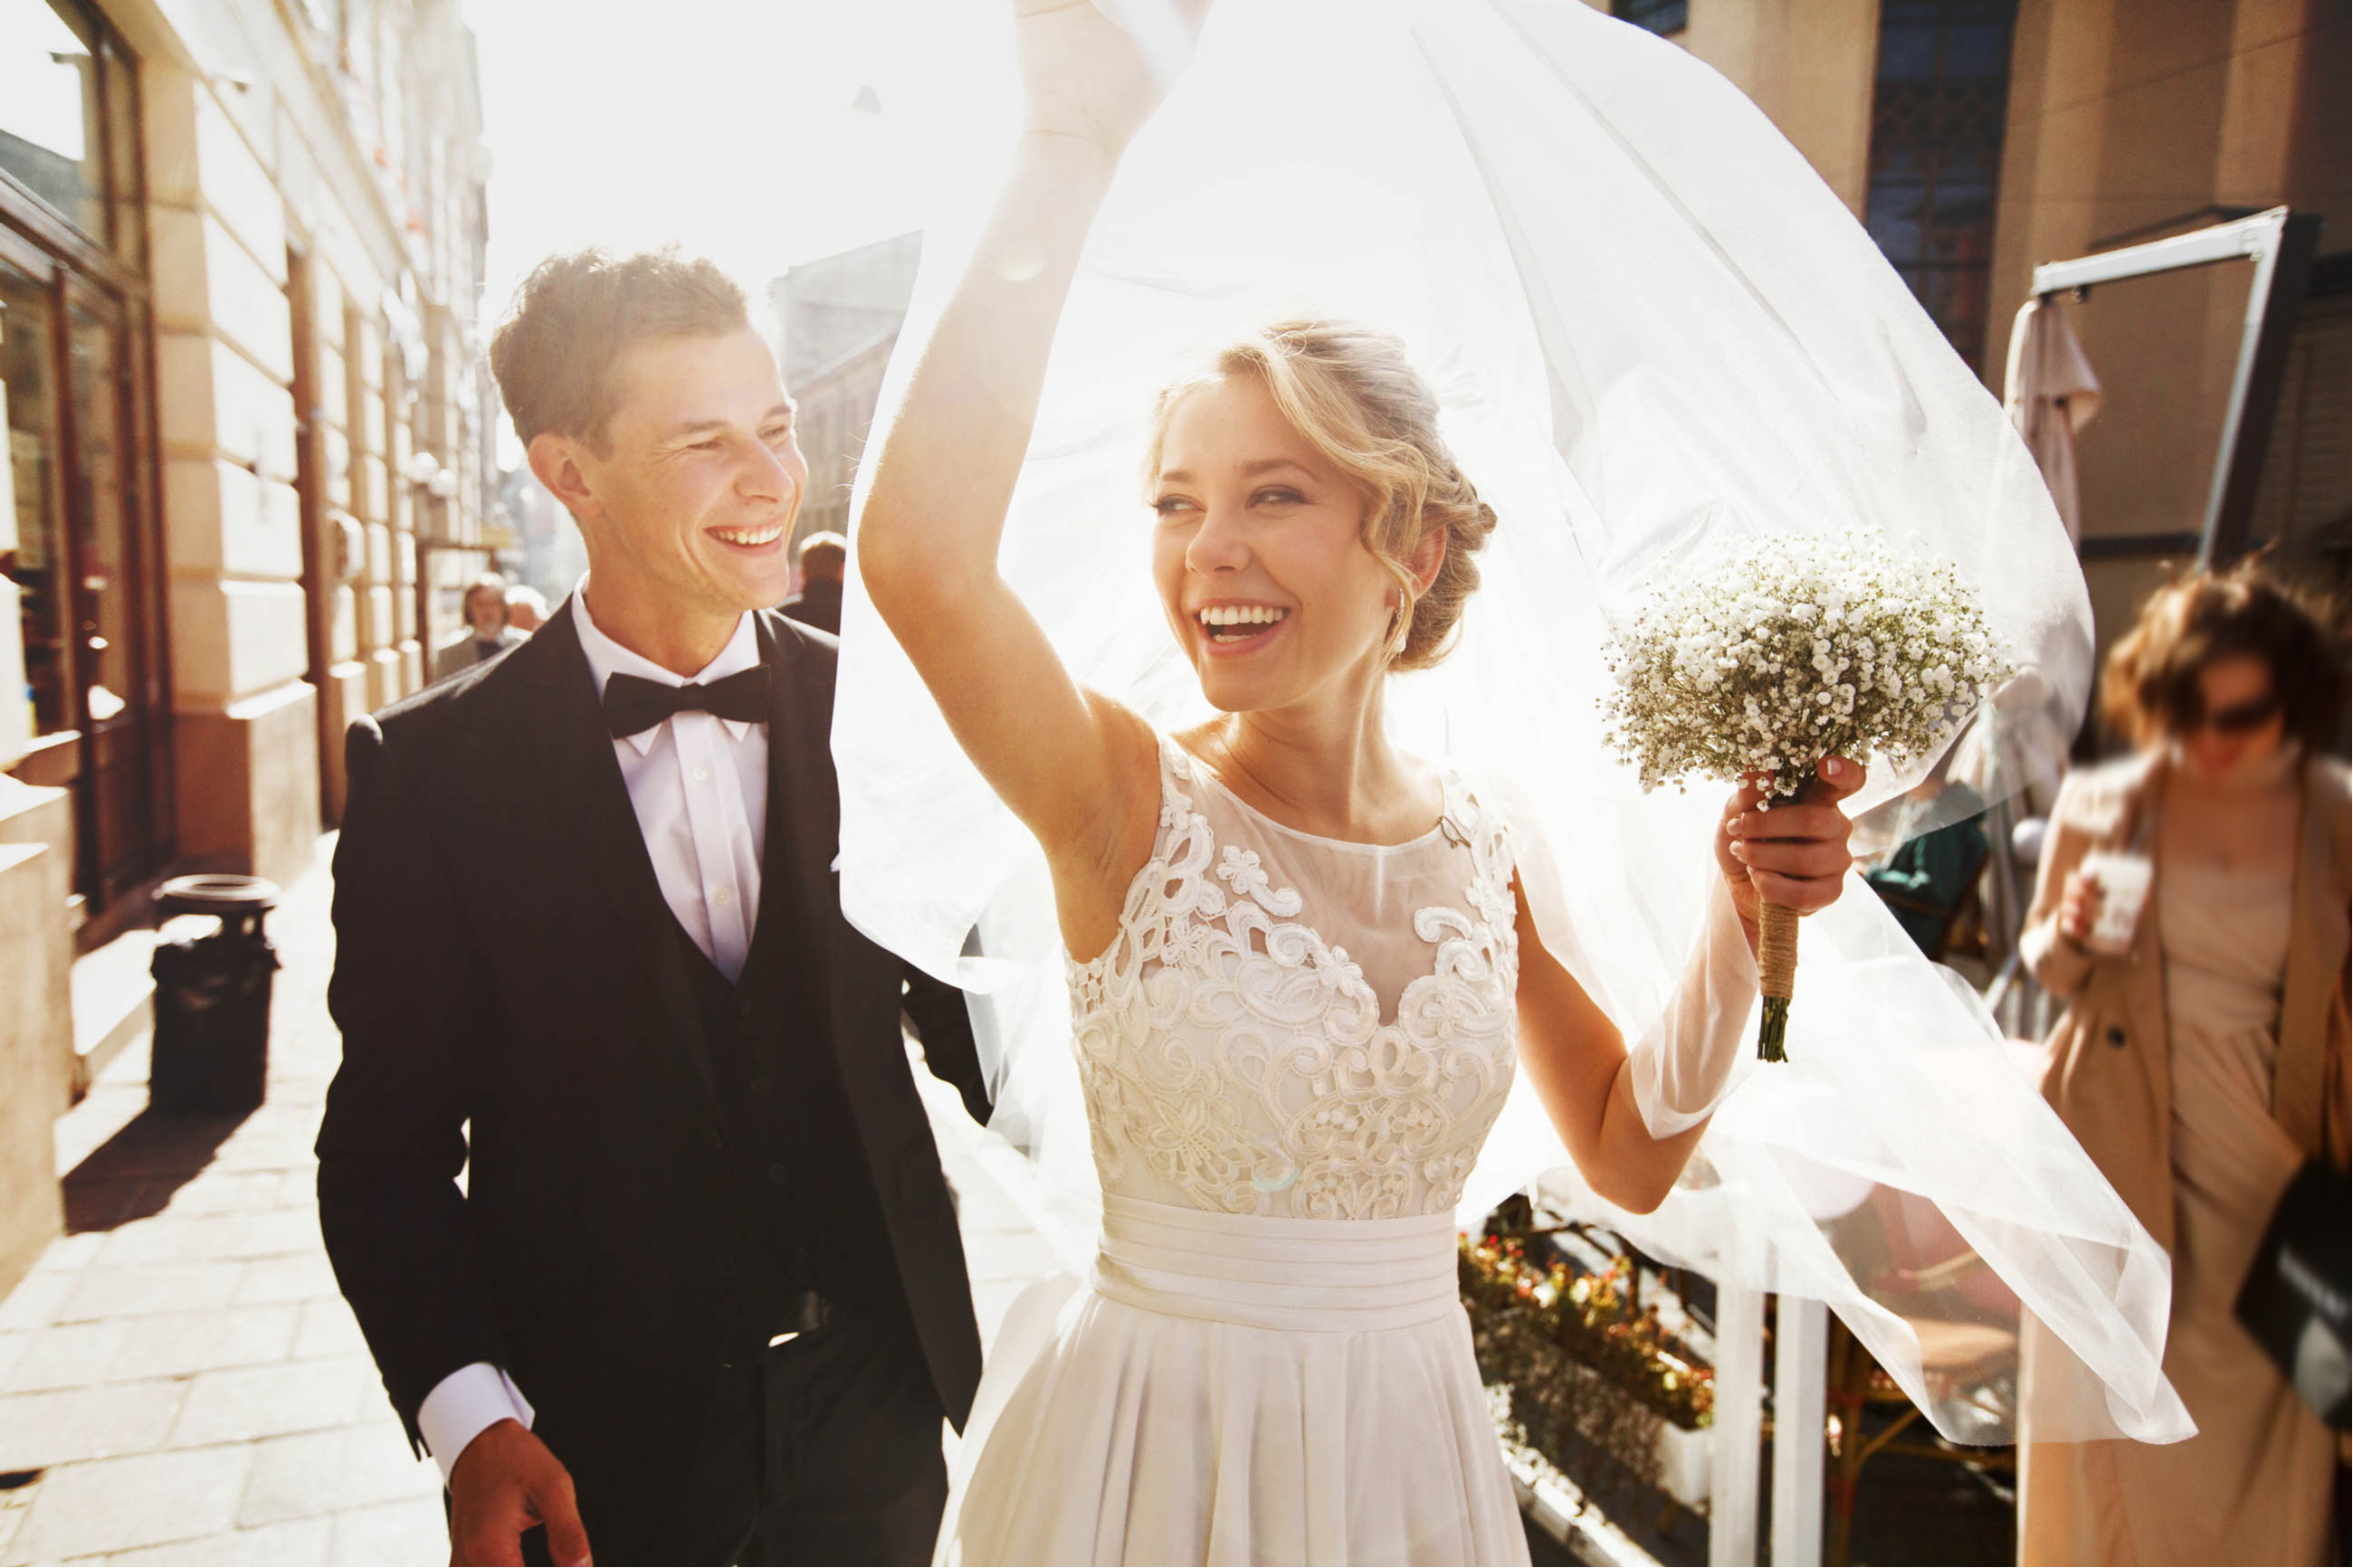 makeup tips for outdoor weddings | makeup | makeup tips | wedding makeup tips | wedding tips | makeup tips for brides | bridal makeup 